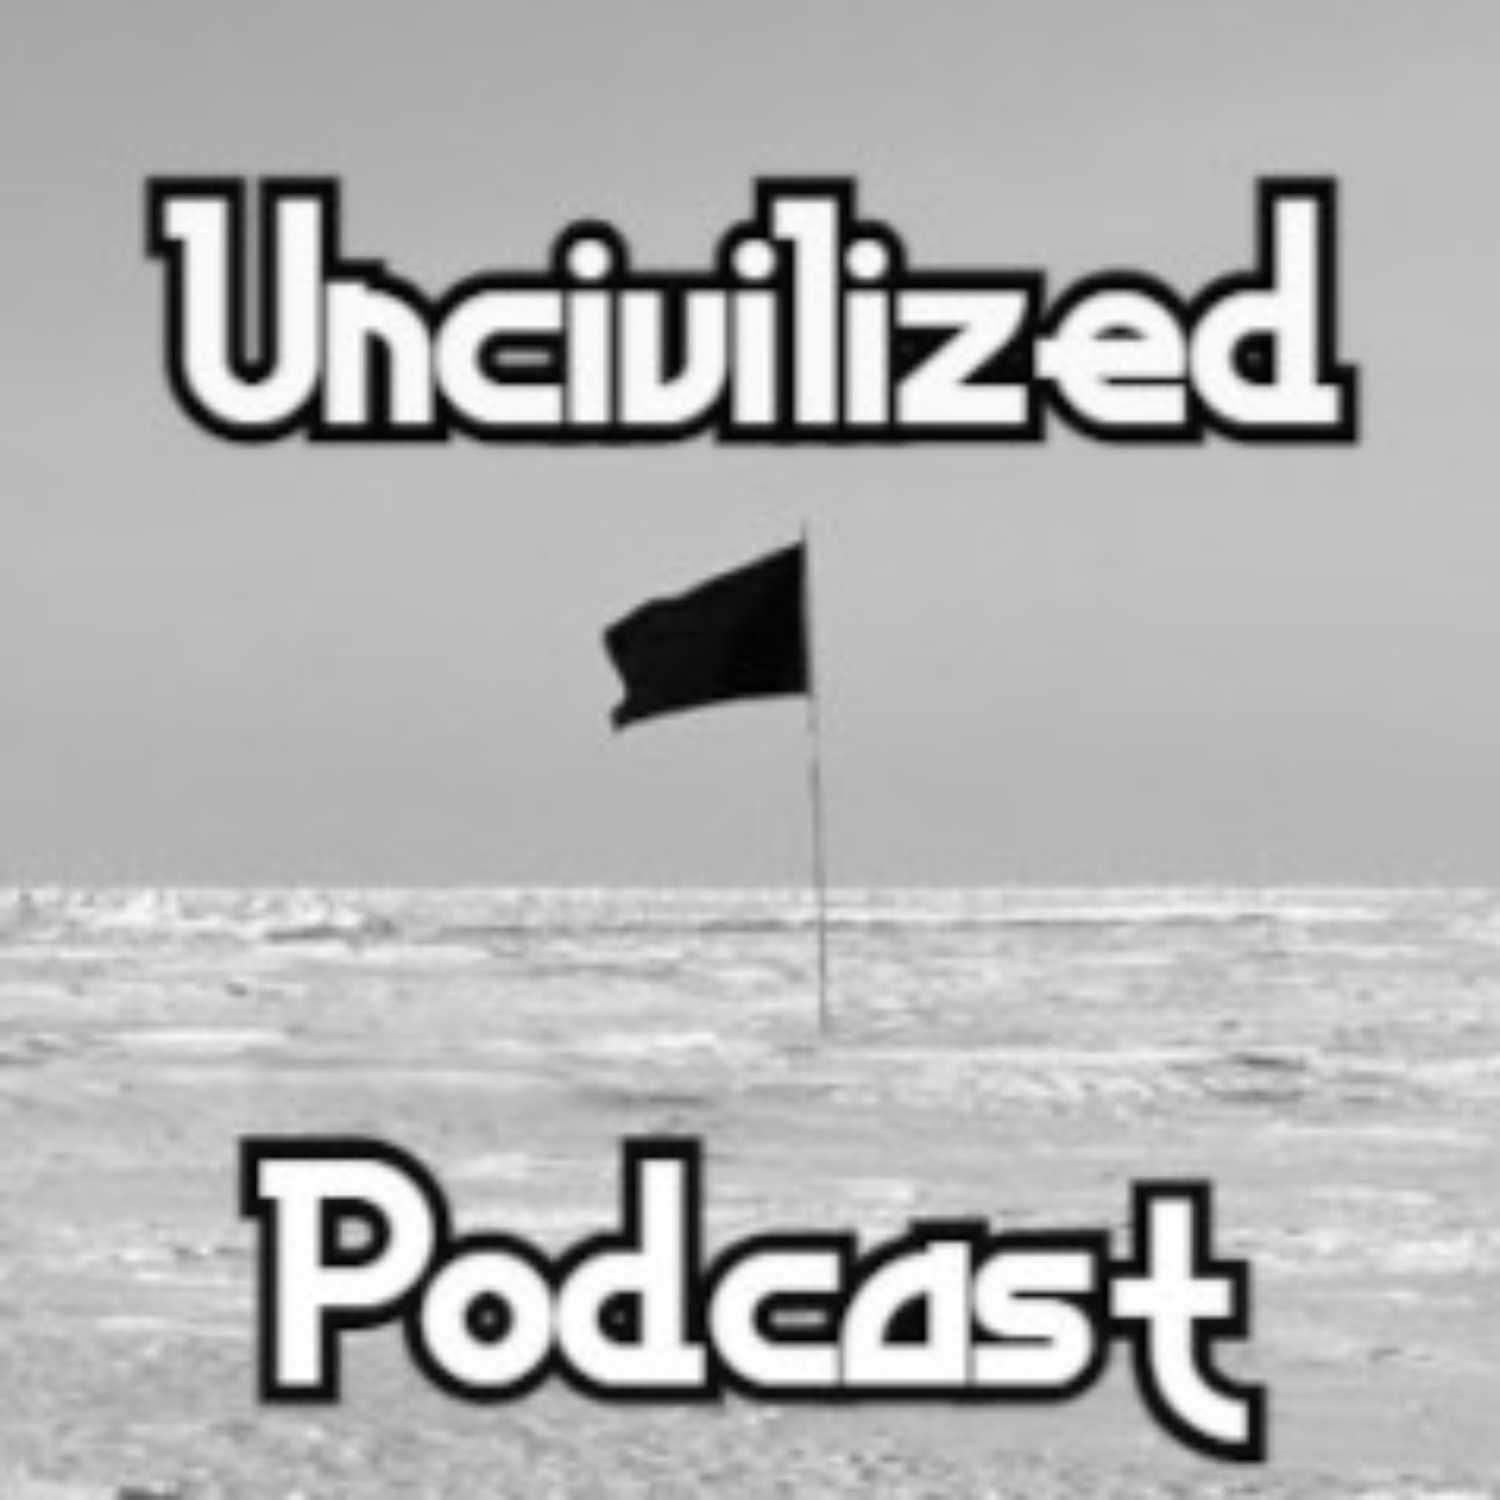 Uncivilized Podcast:Uncivilized